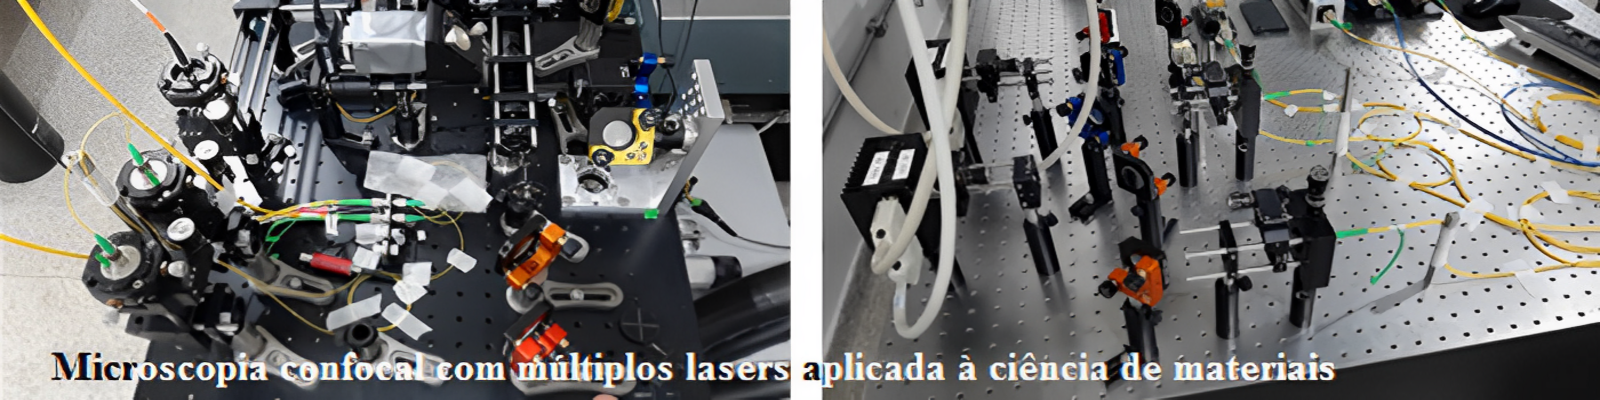 Microscopia confocal com múltiplos lasers aplicada à ciência de materiais